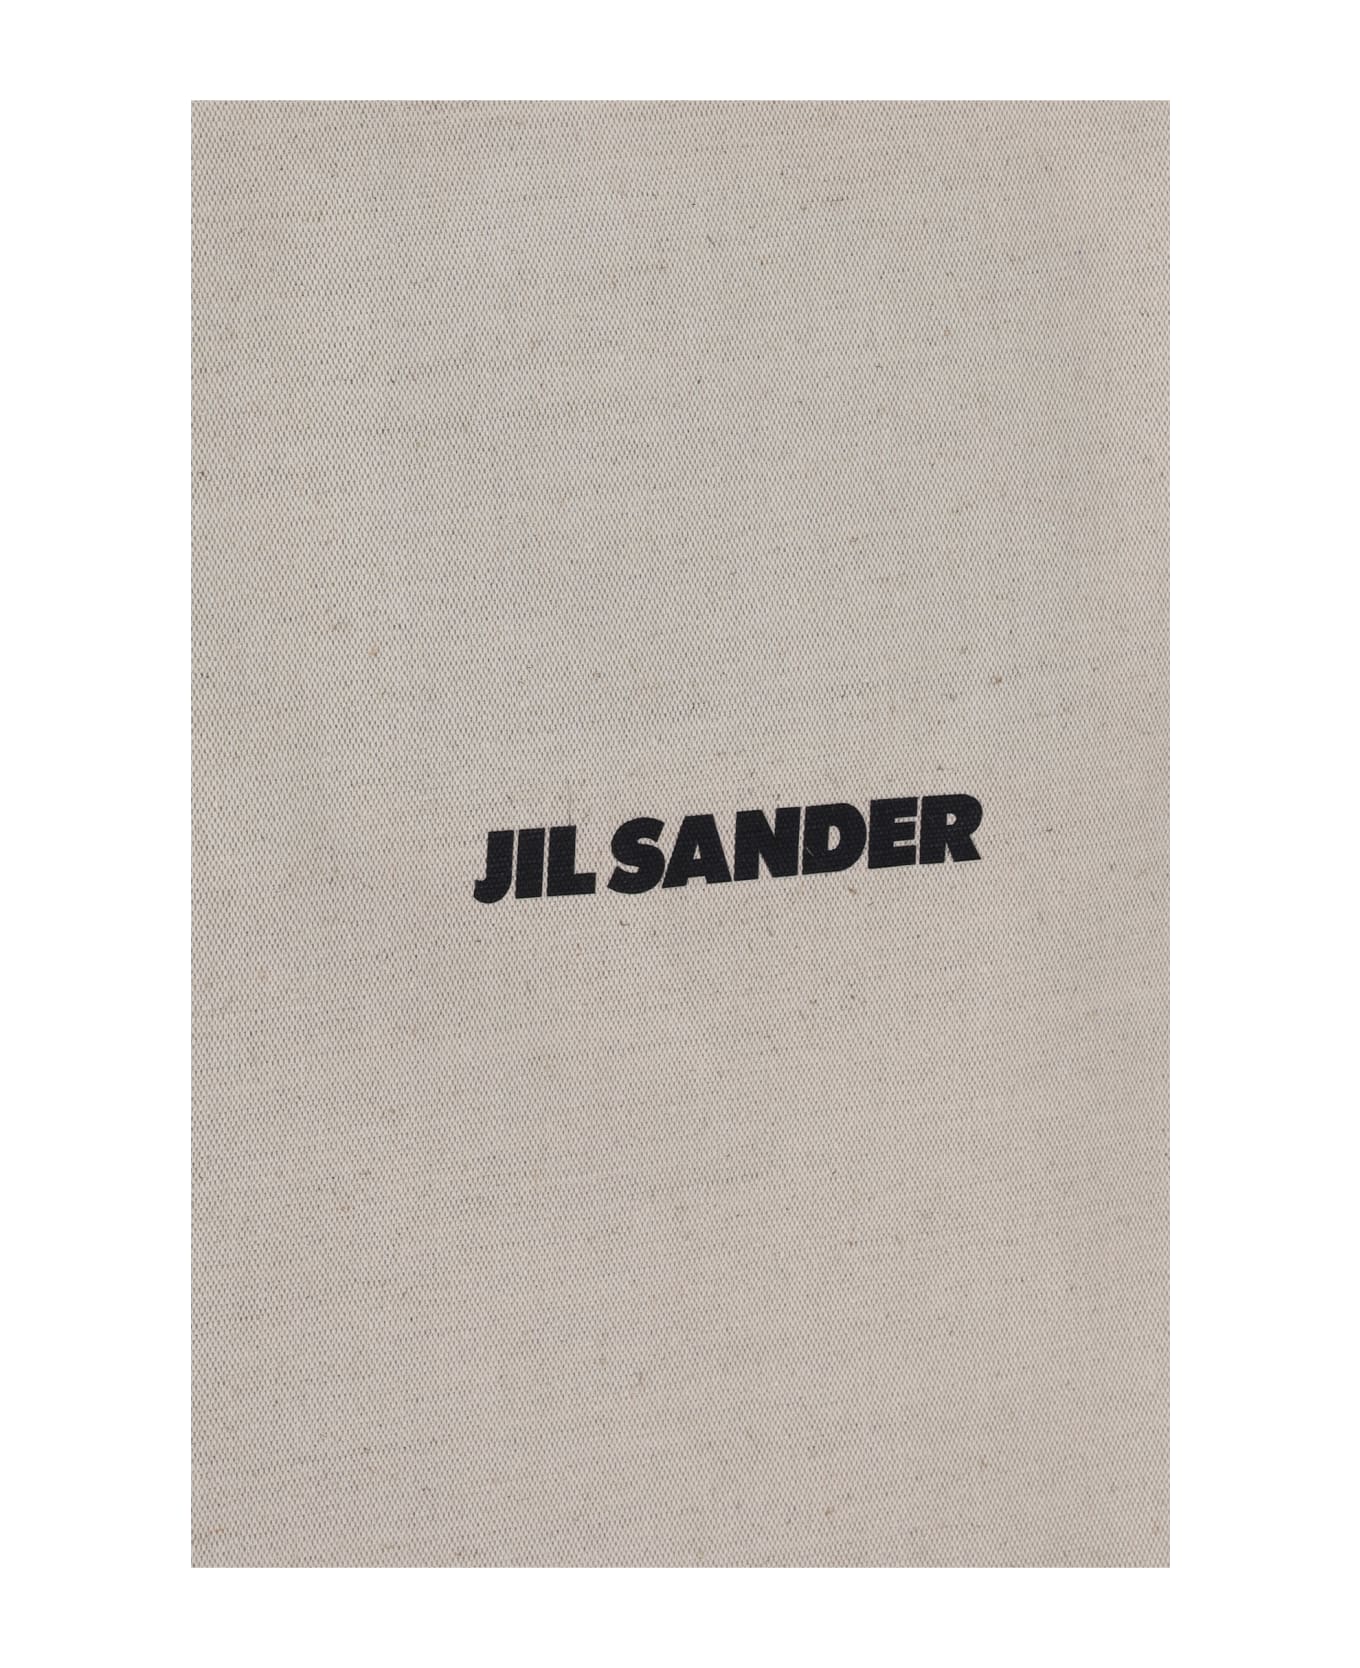 Jil Sander Shopping Bag - 102